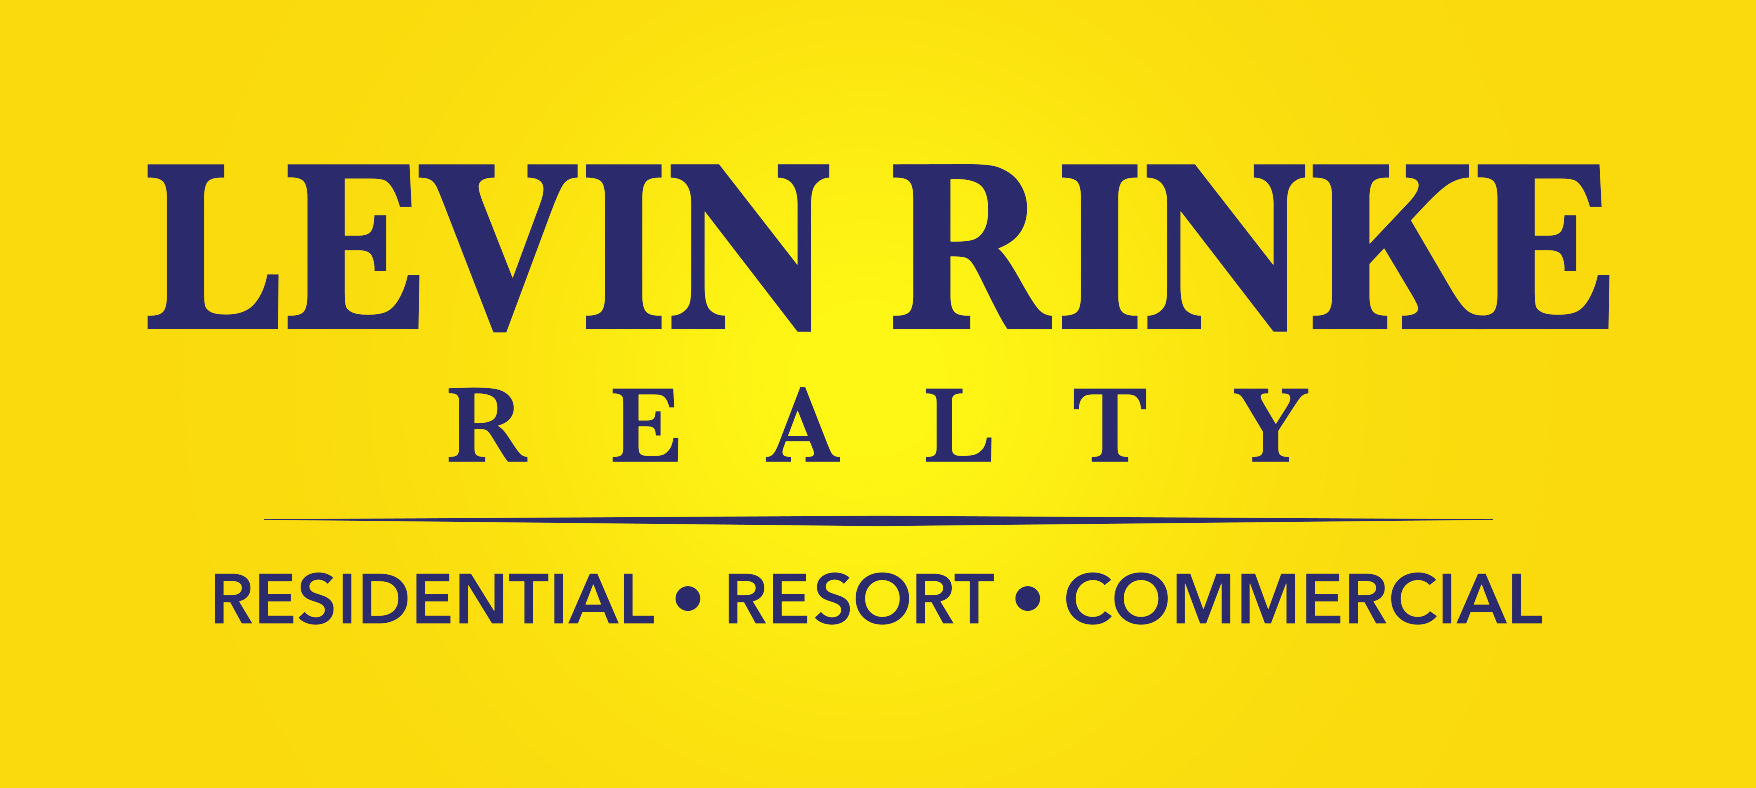 Levi rinke realty logo.